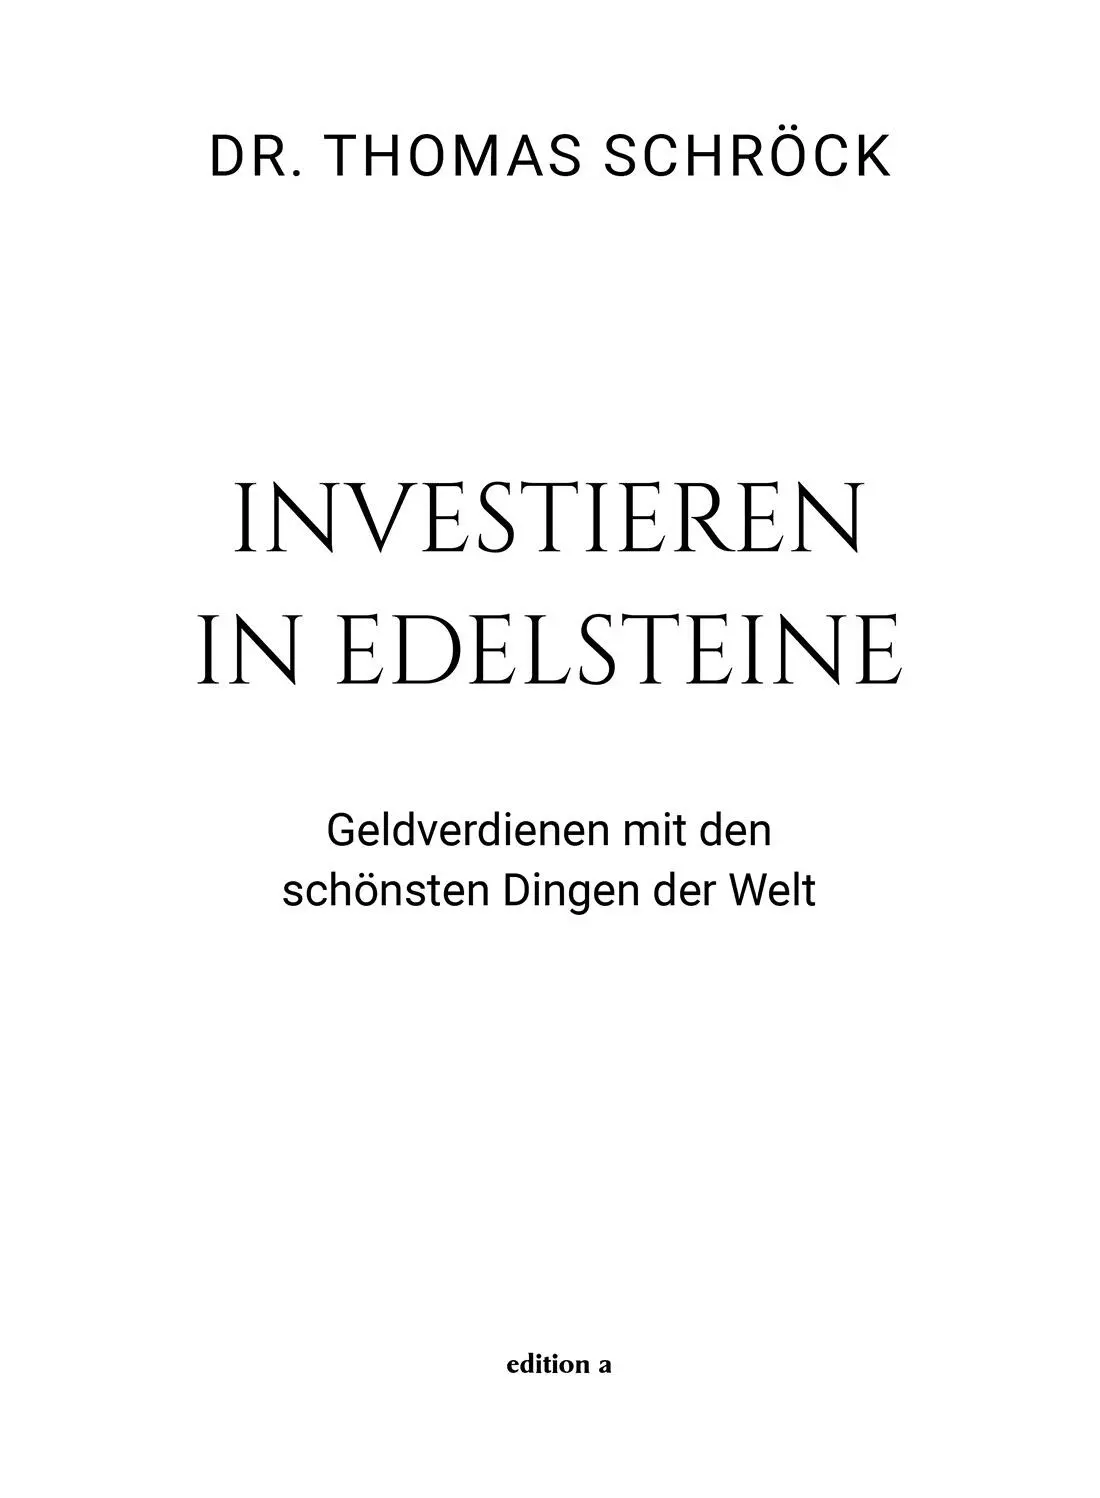 Dr Thomas Schröck Investieren In Edelsteine Alle Rechte vorbehalten 2021 - фото 1